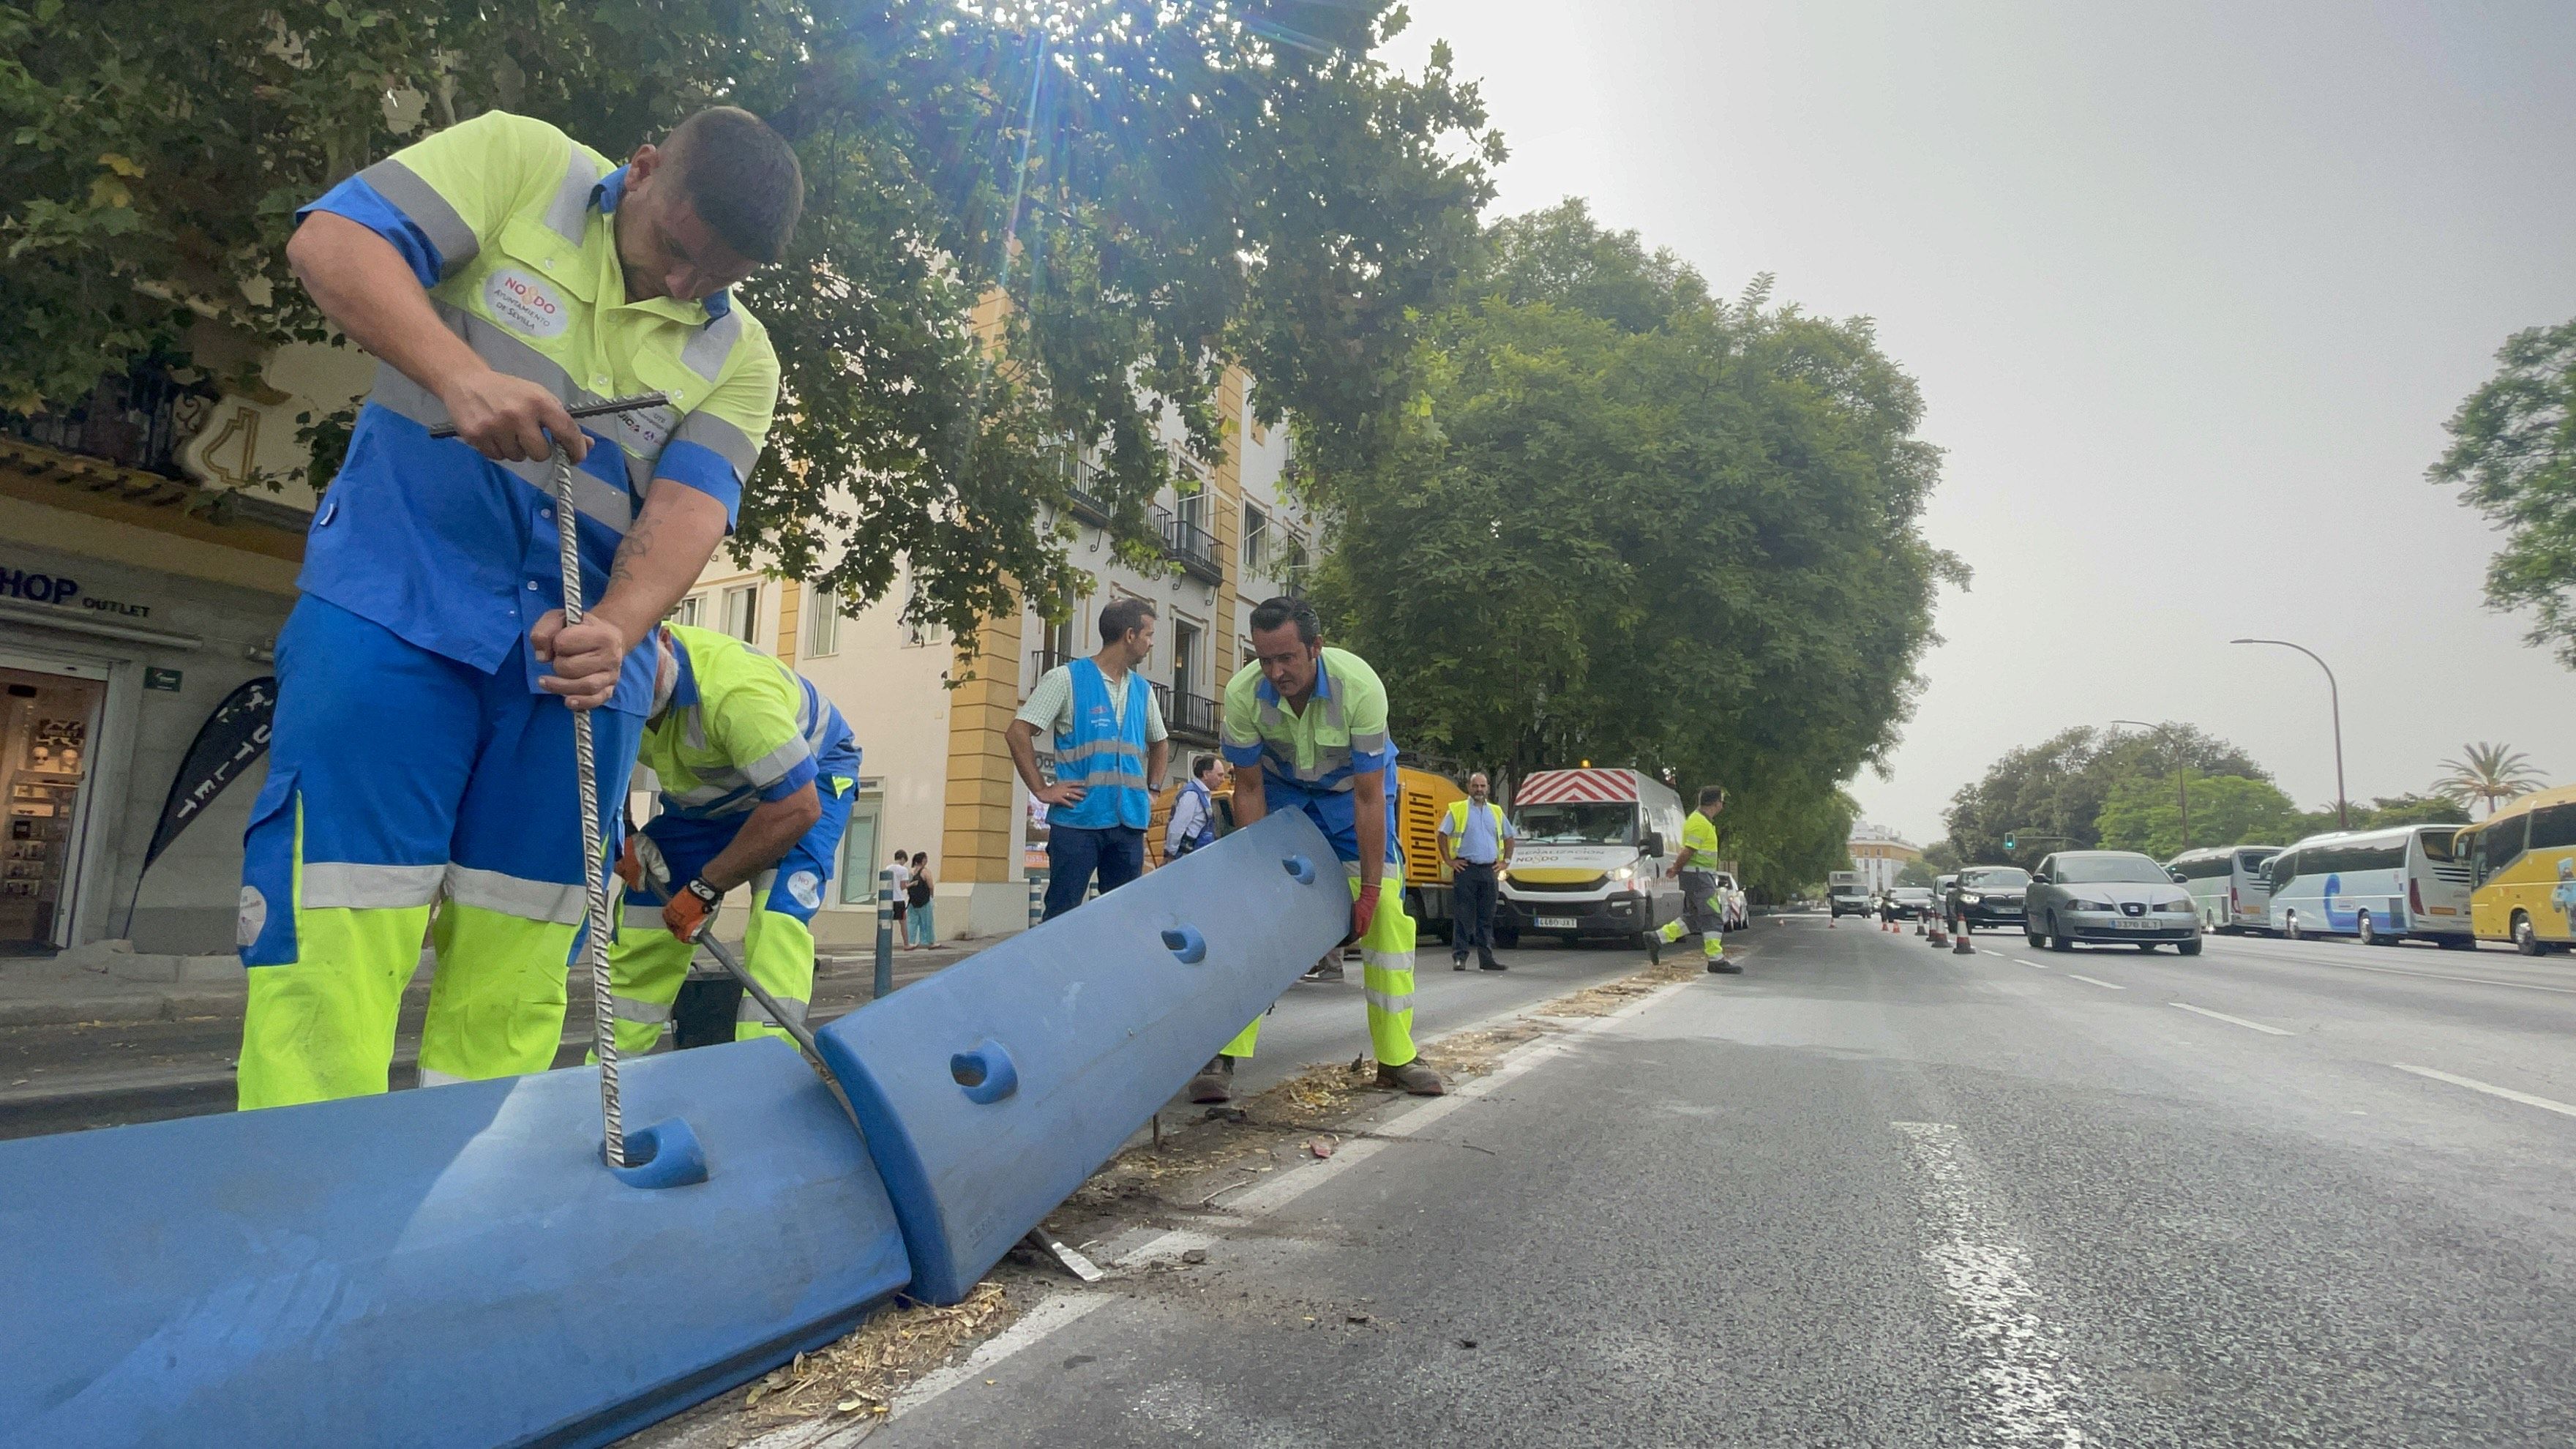 Operarios municipales de Sevilla retirando los separadores del carril bus, causantes de accidentes